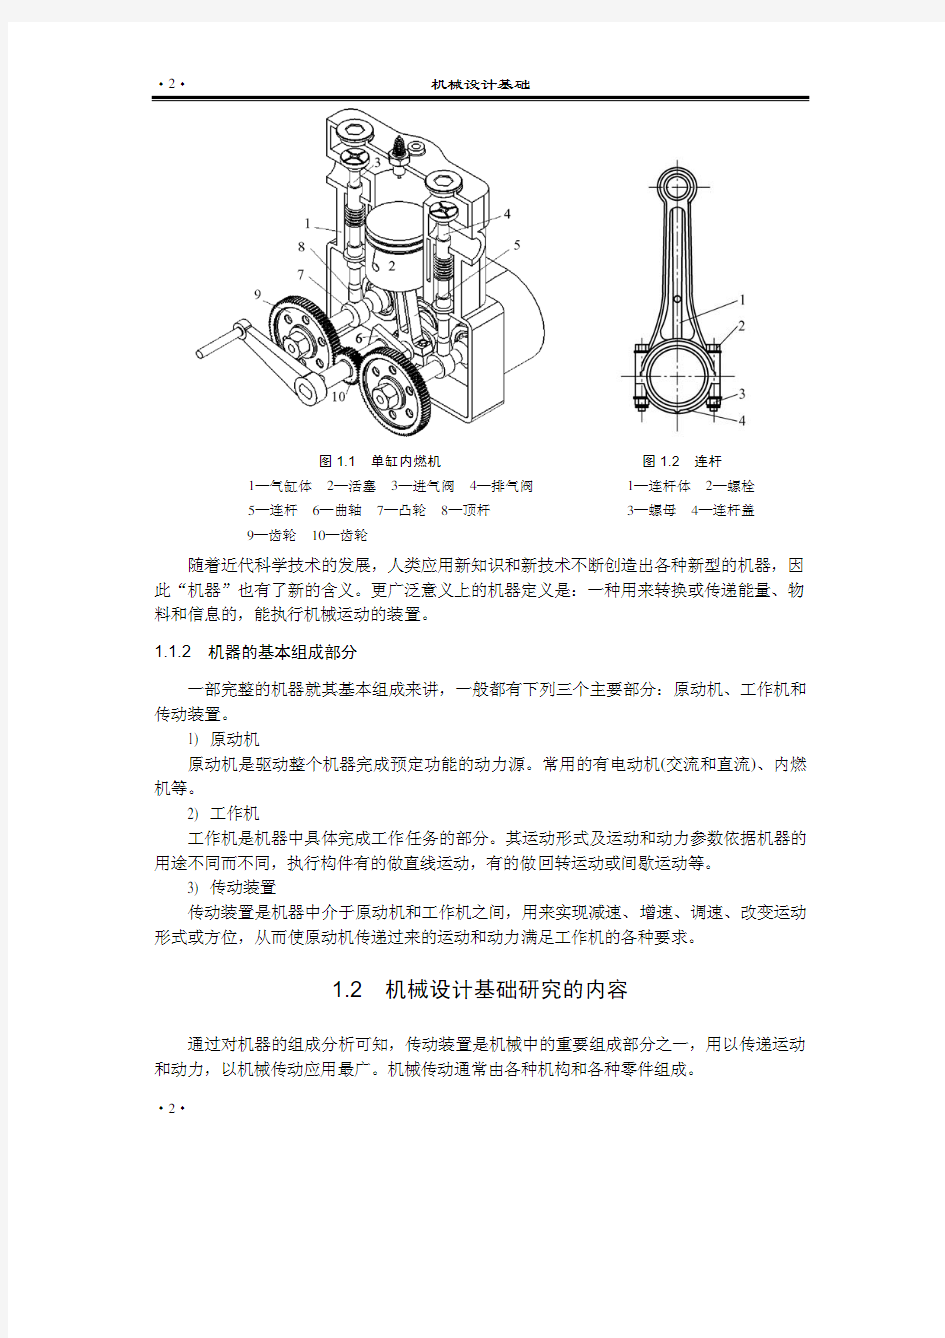 机械设计原理.pdf